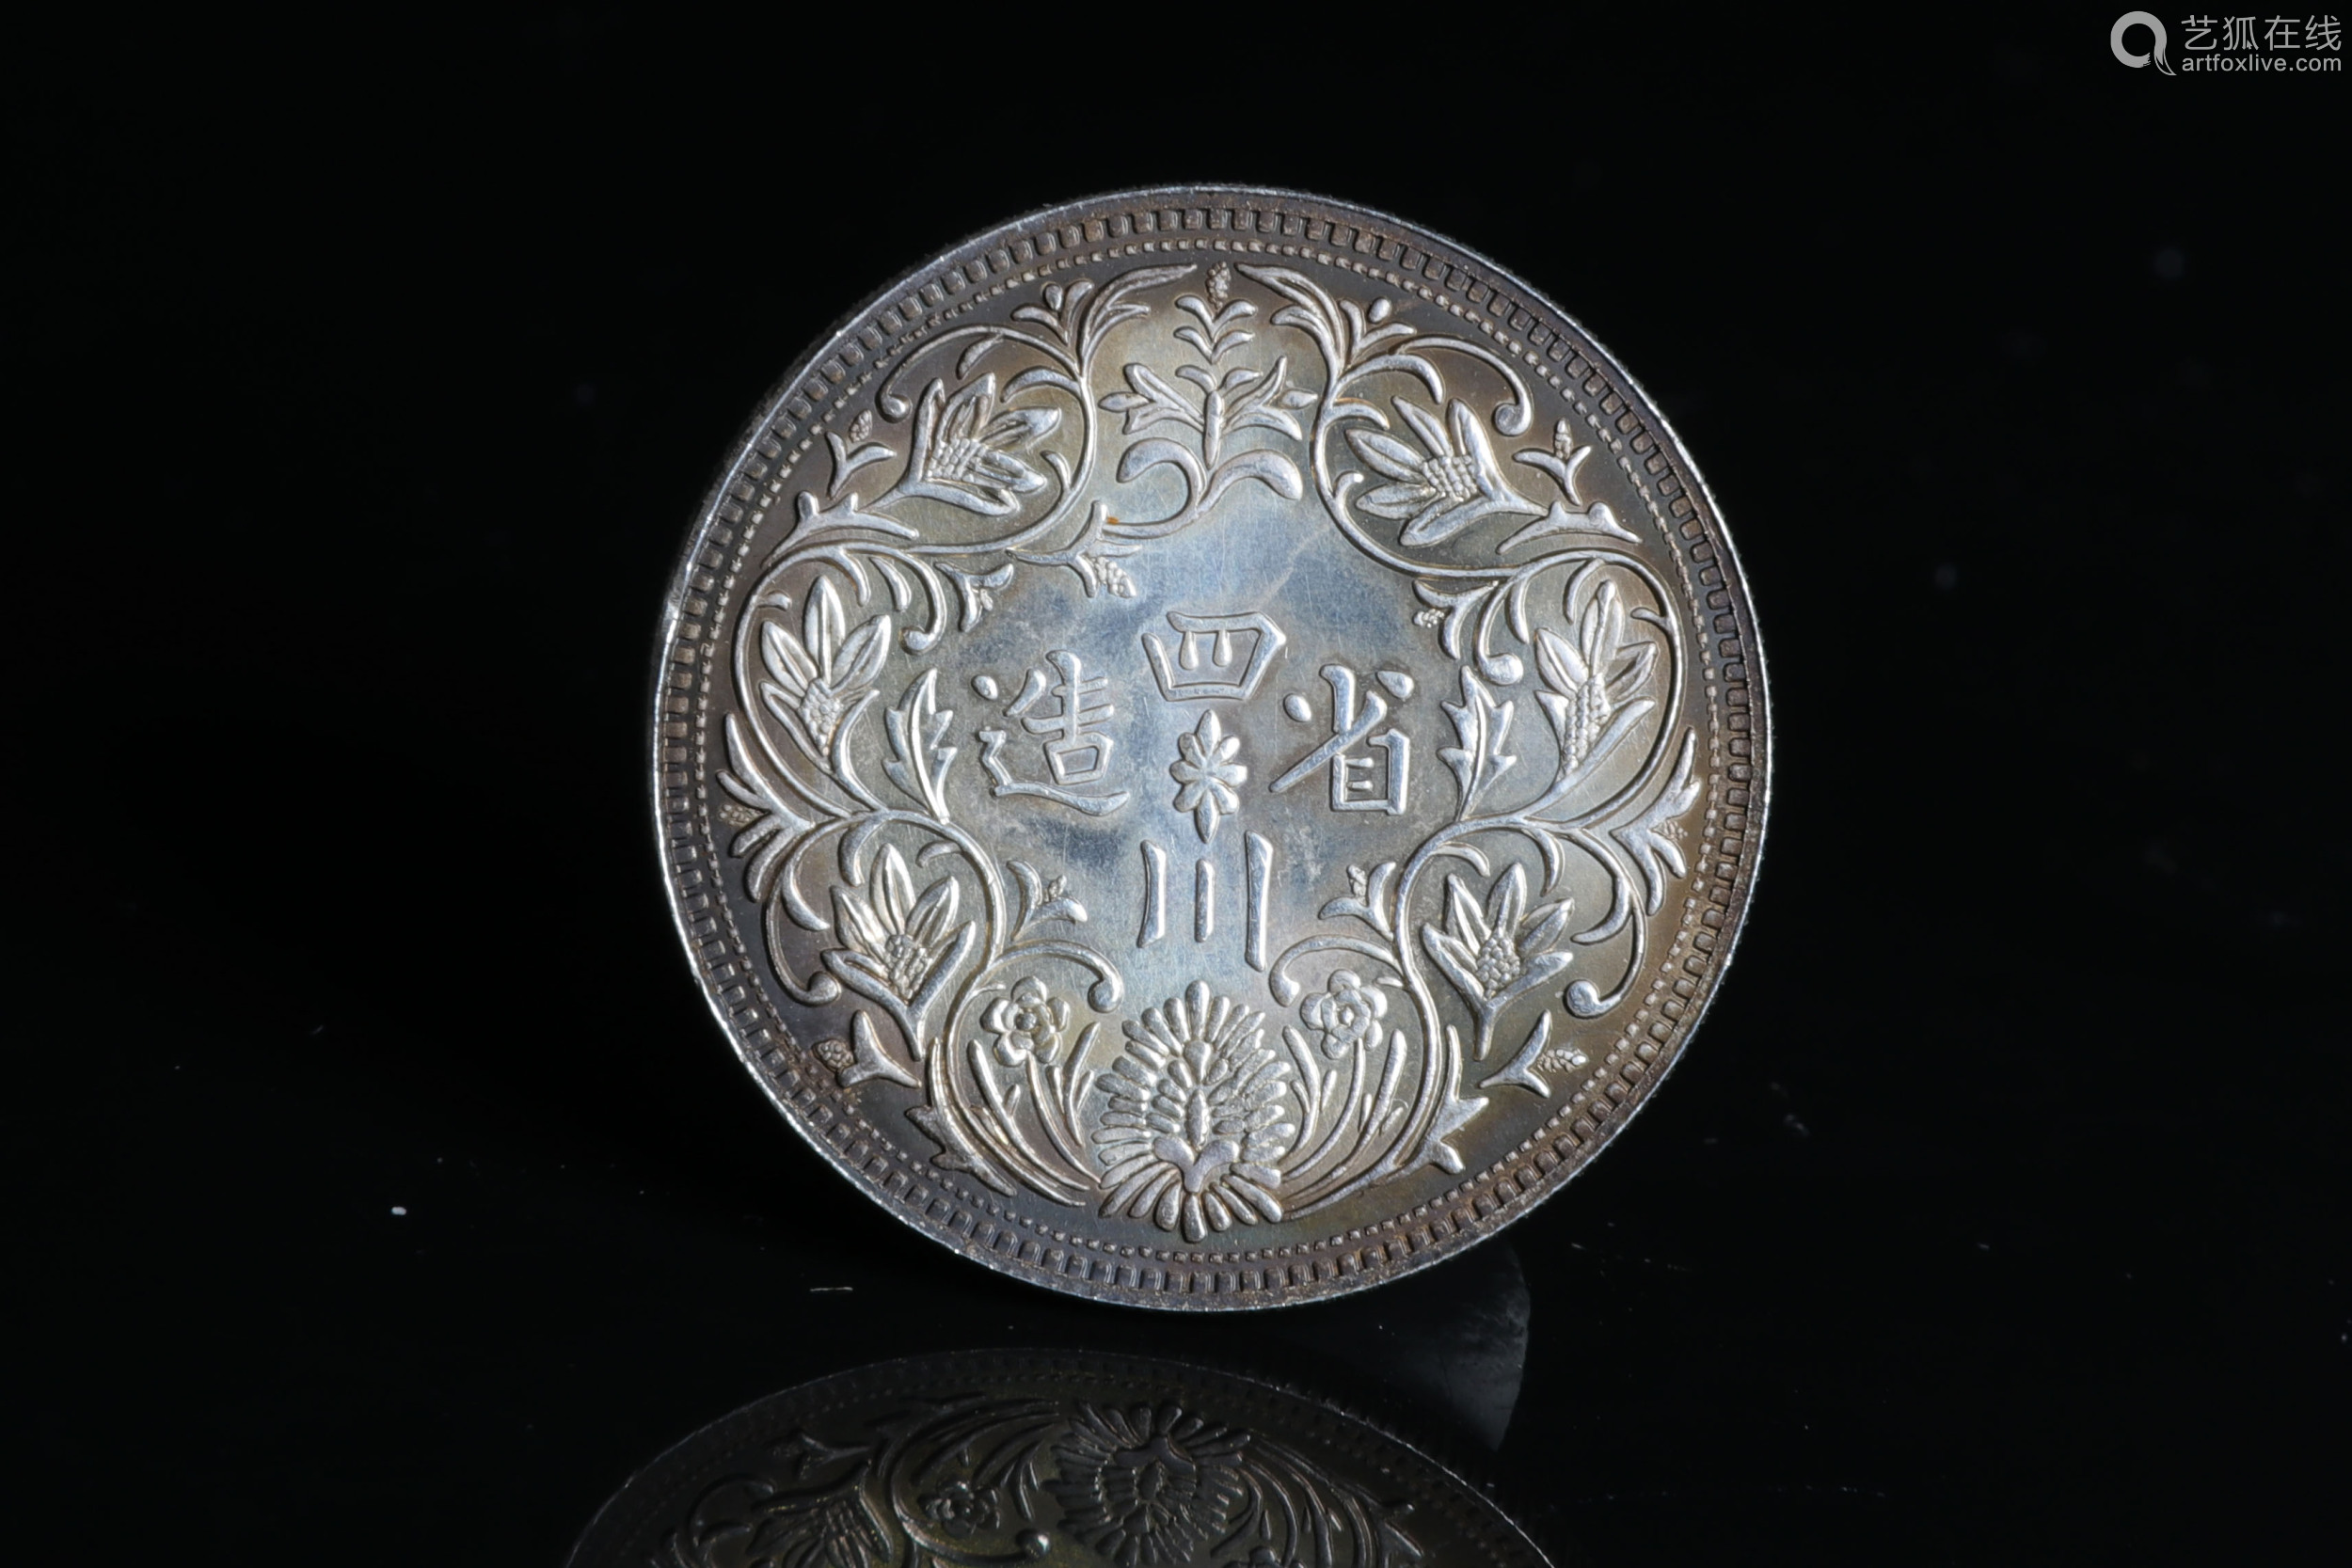 sichuan province "portrait" coin